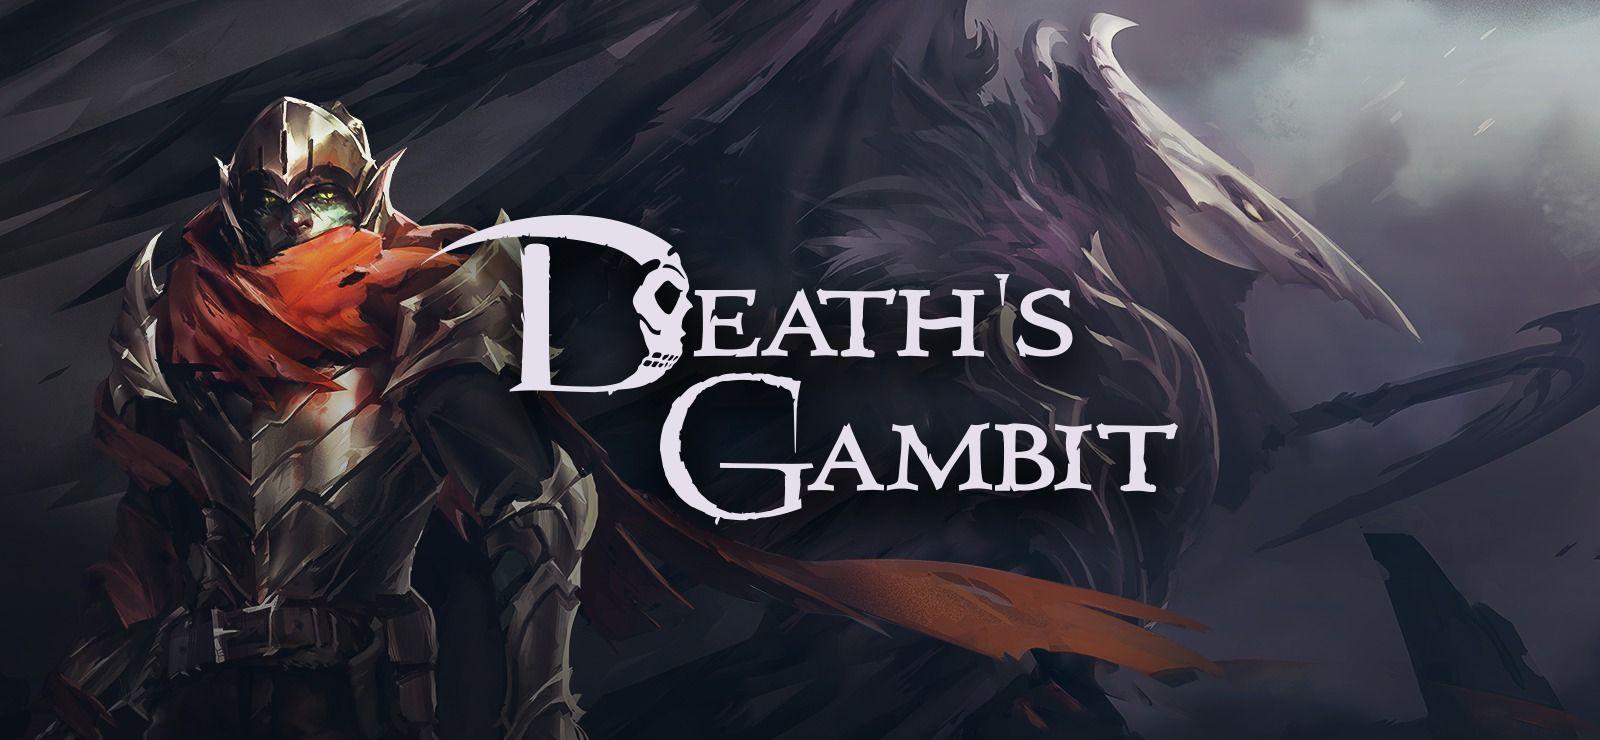 Death's Gambit Wallpapers - Wallpaper Cave